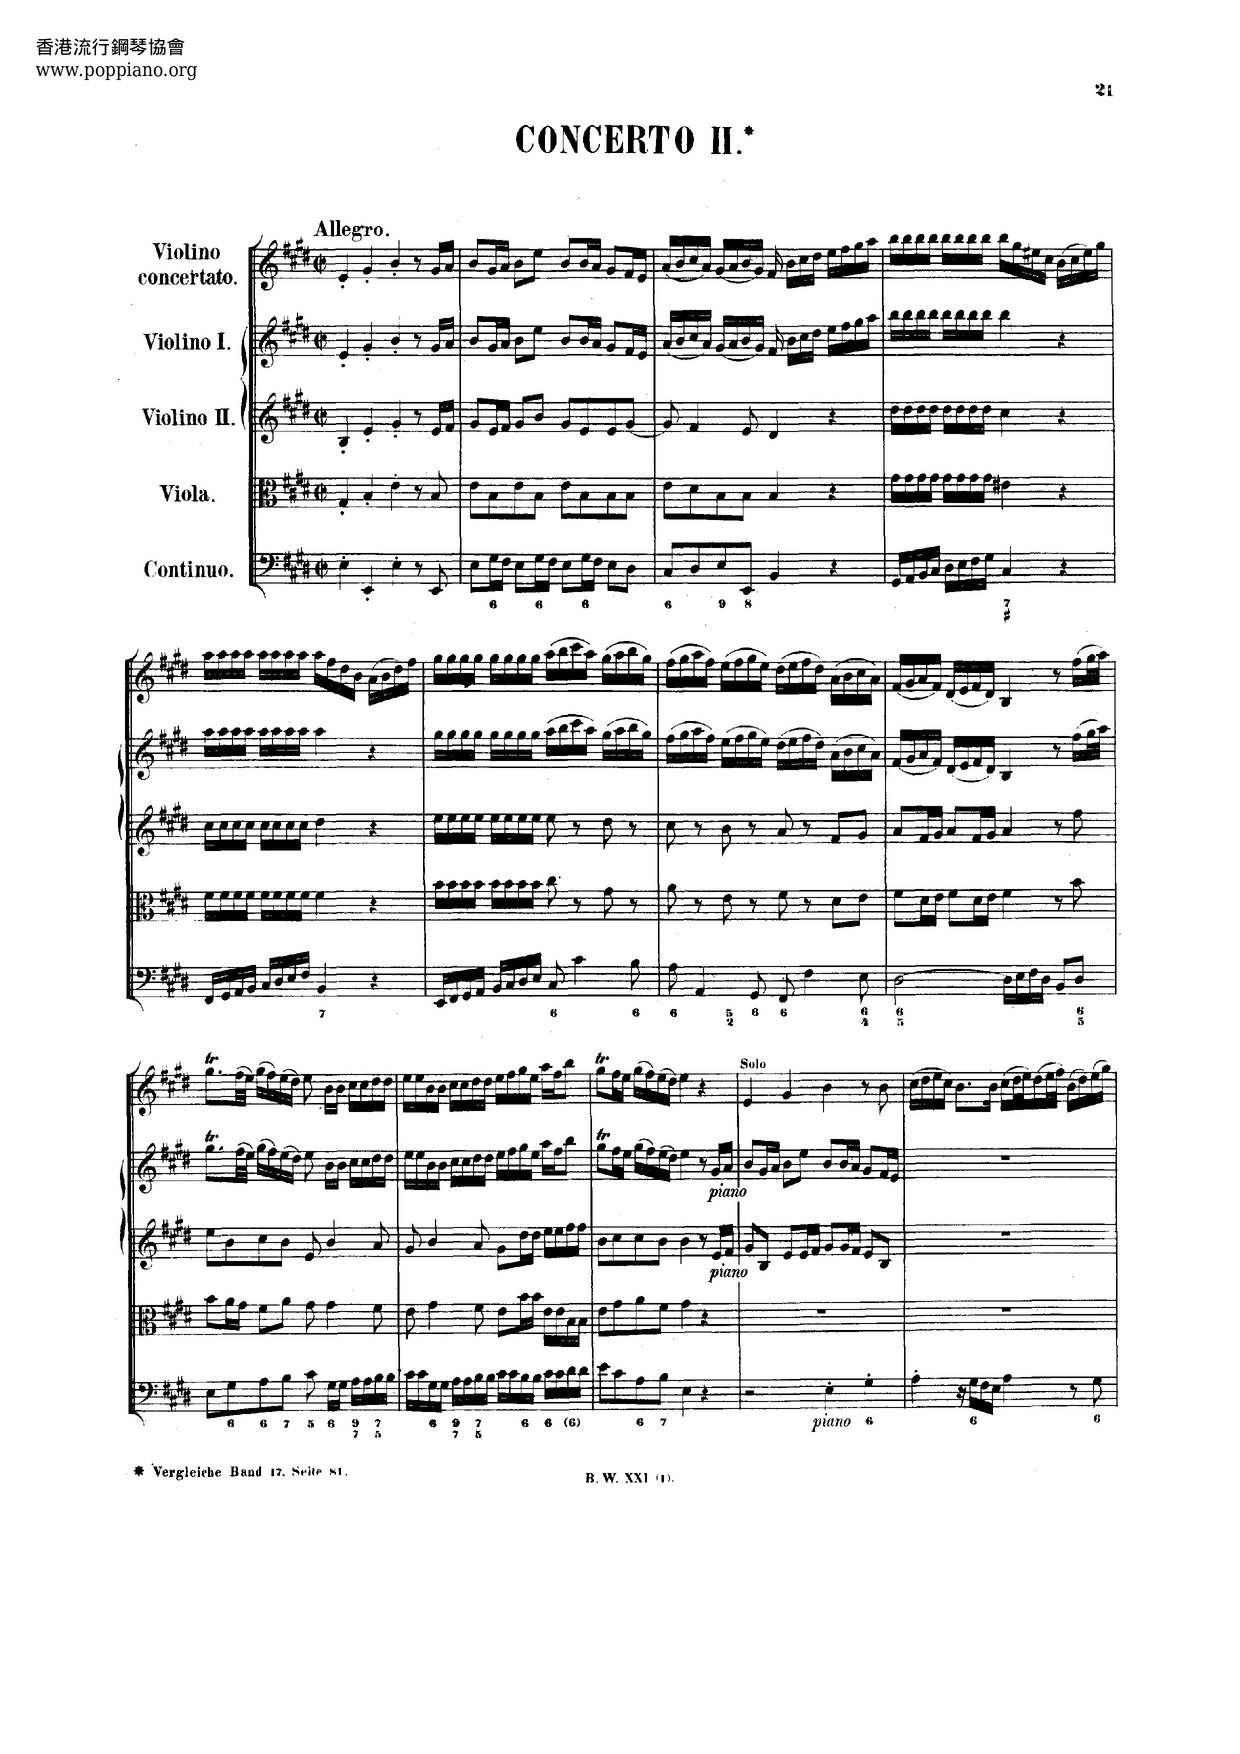 Montero: Adagio (After Bach's Violin Concerto No. 2, BWV 1042) Score